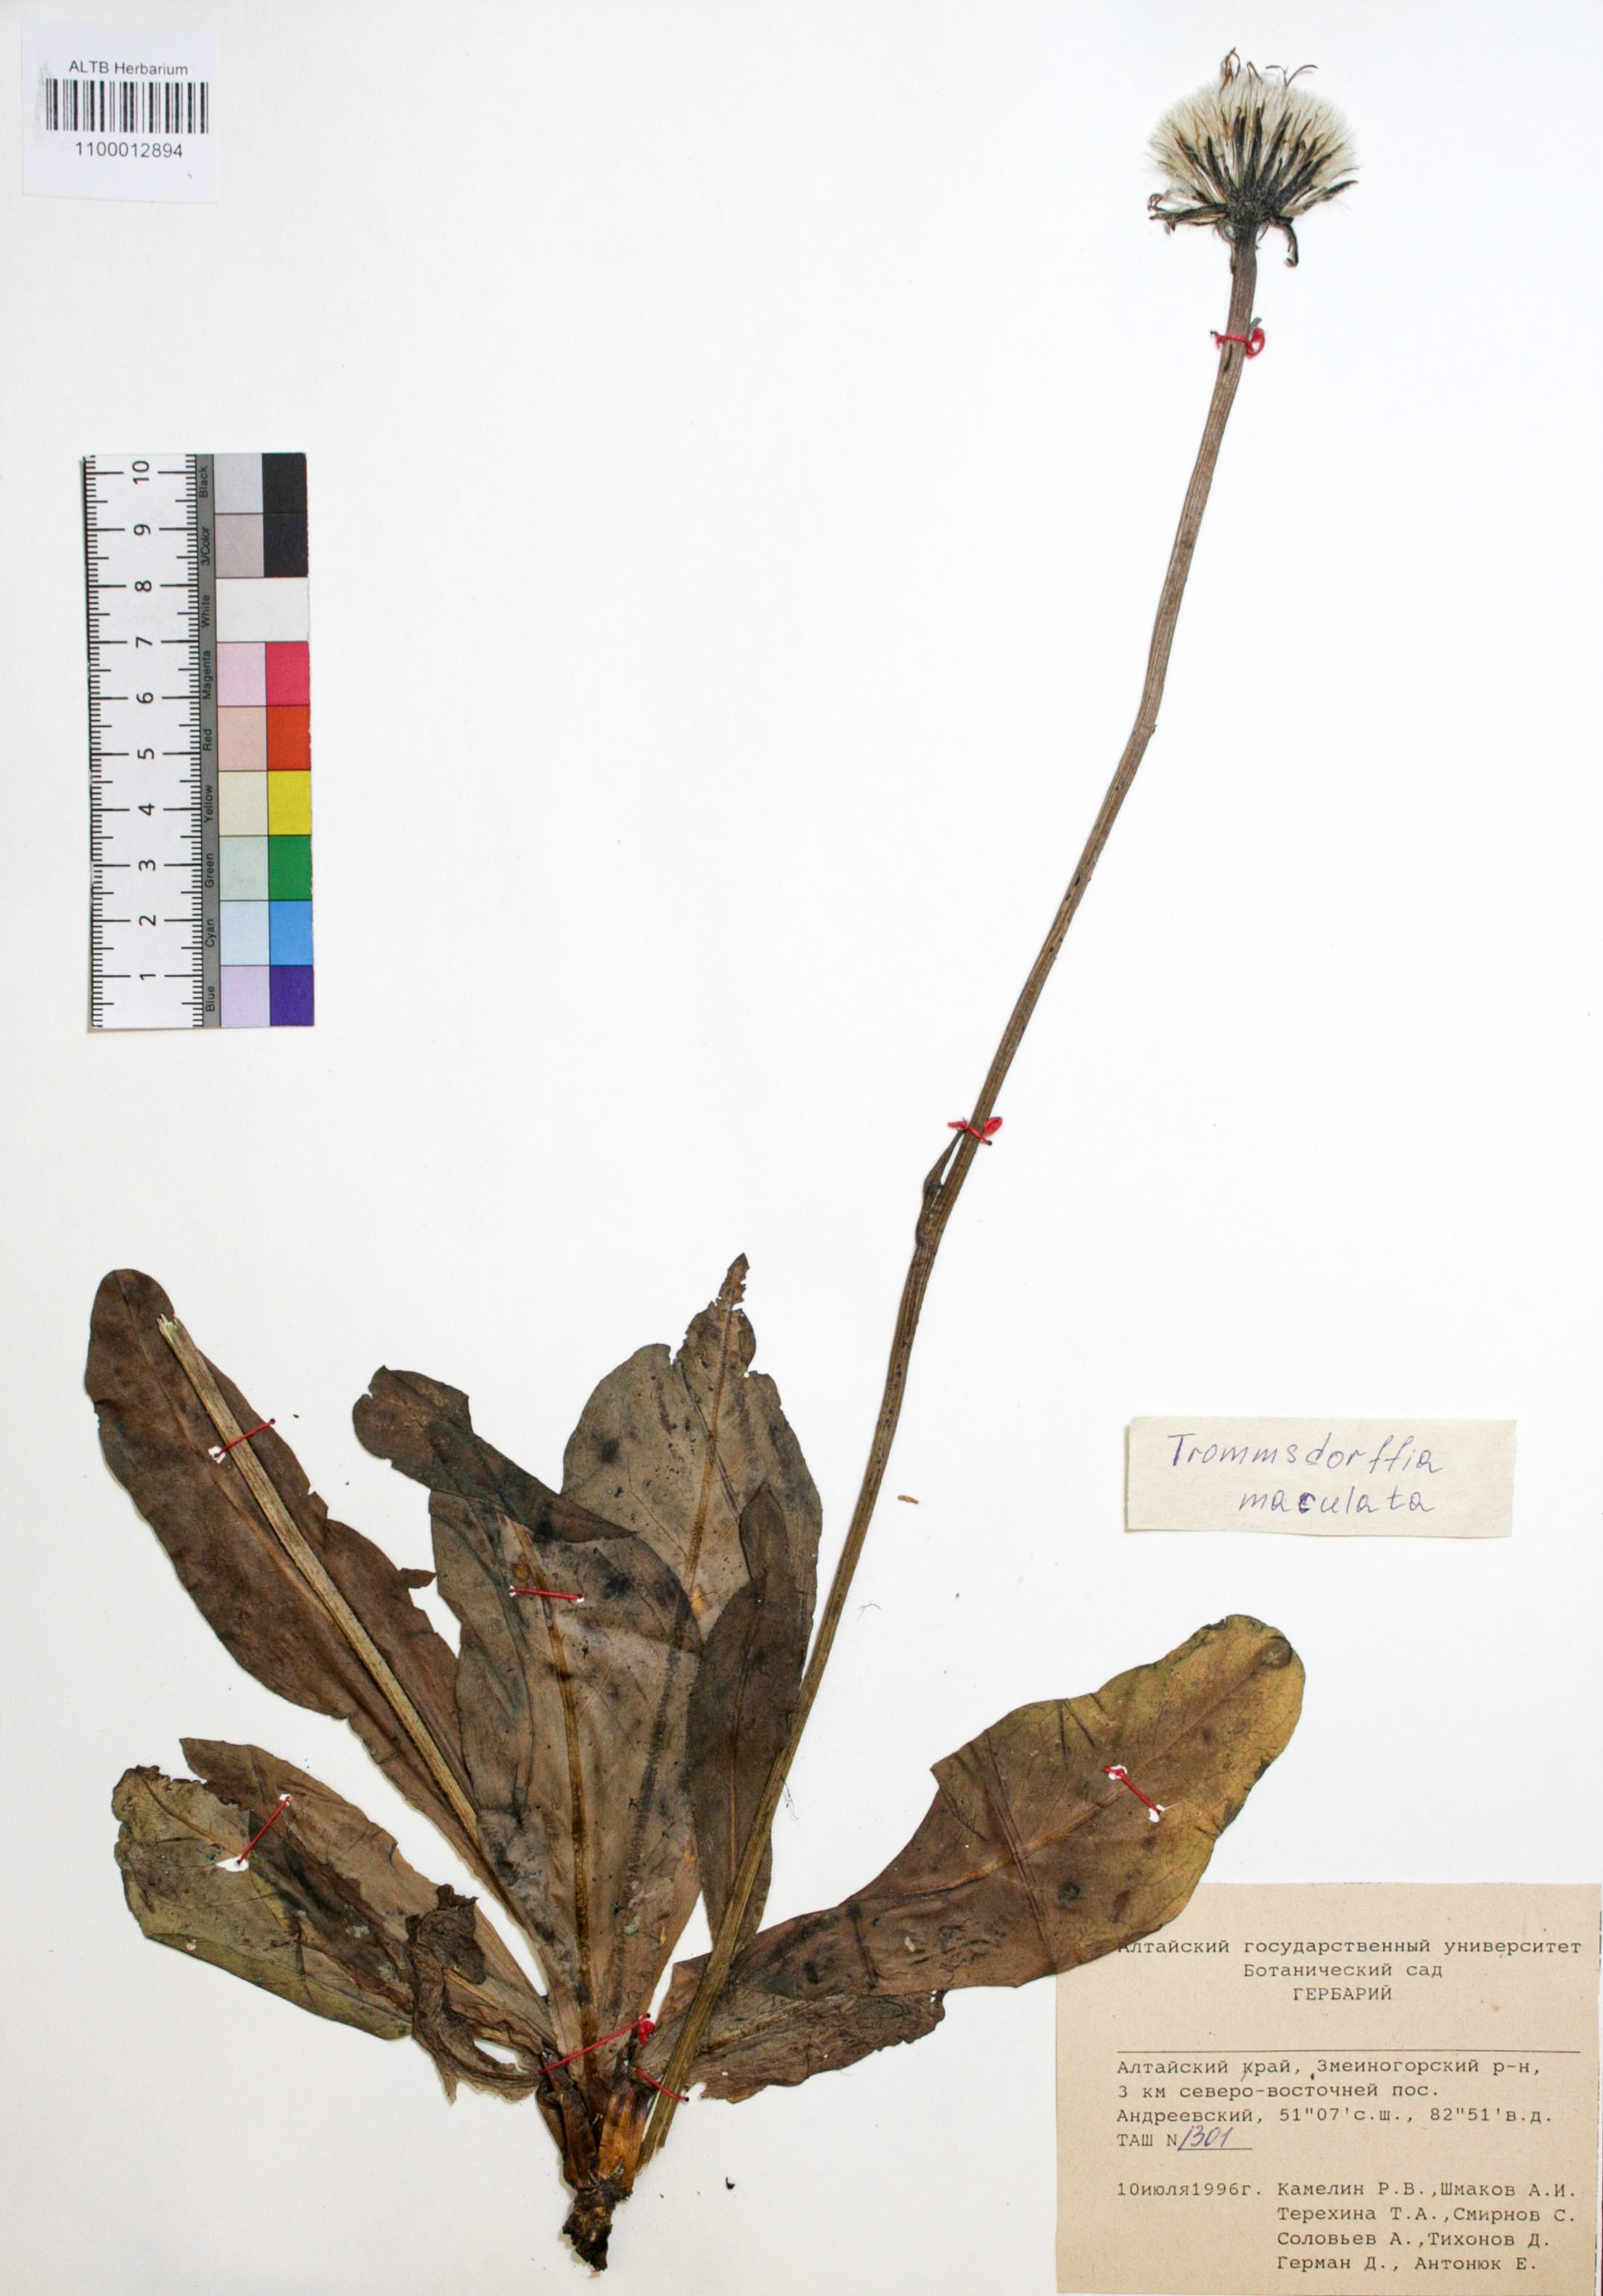 Trommsdorffia maculata (L.) Bernh.